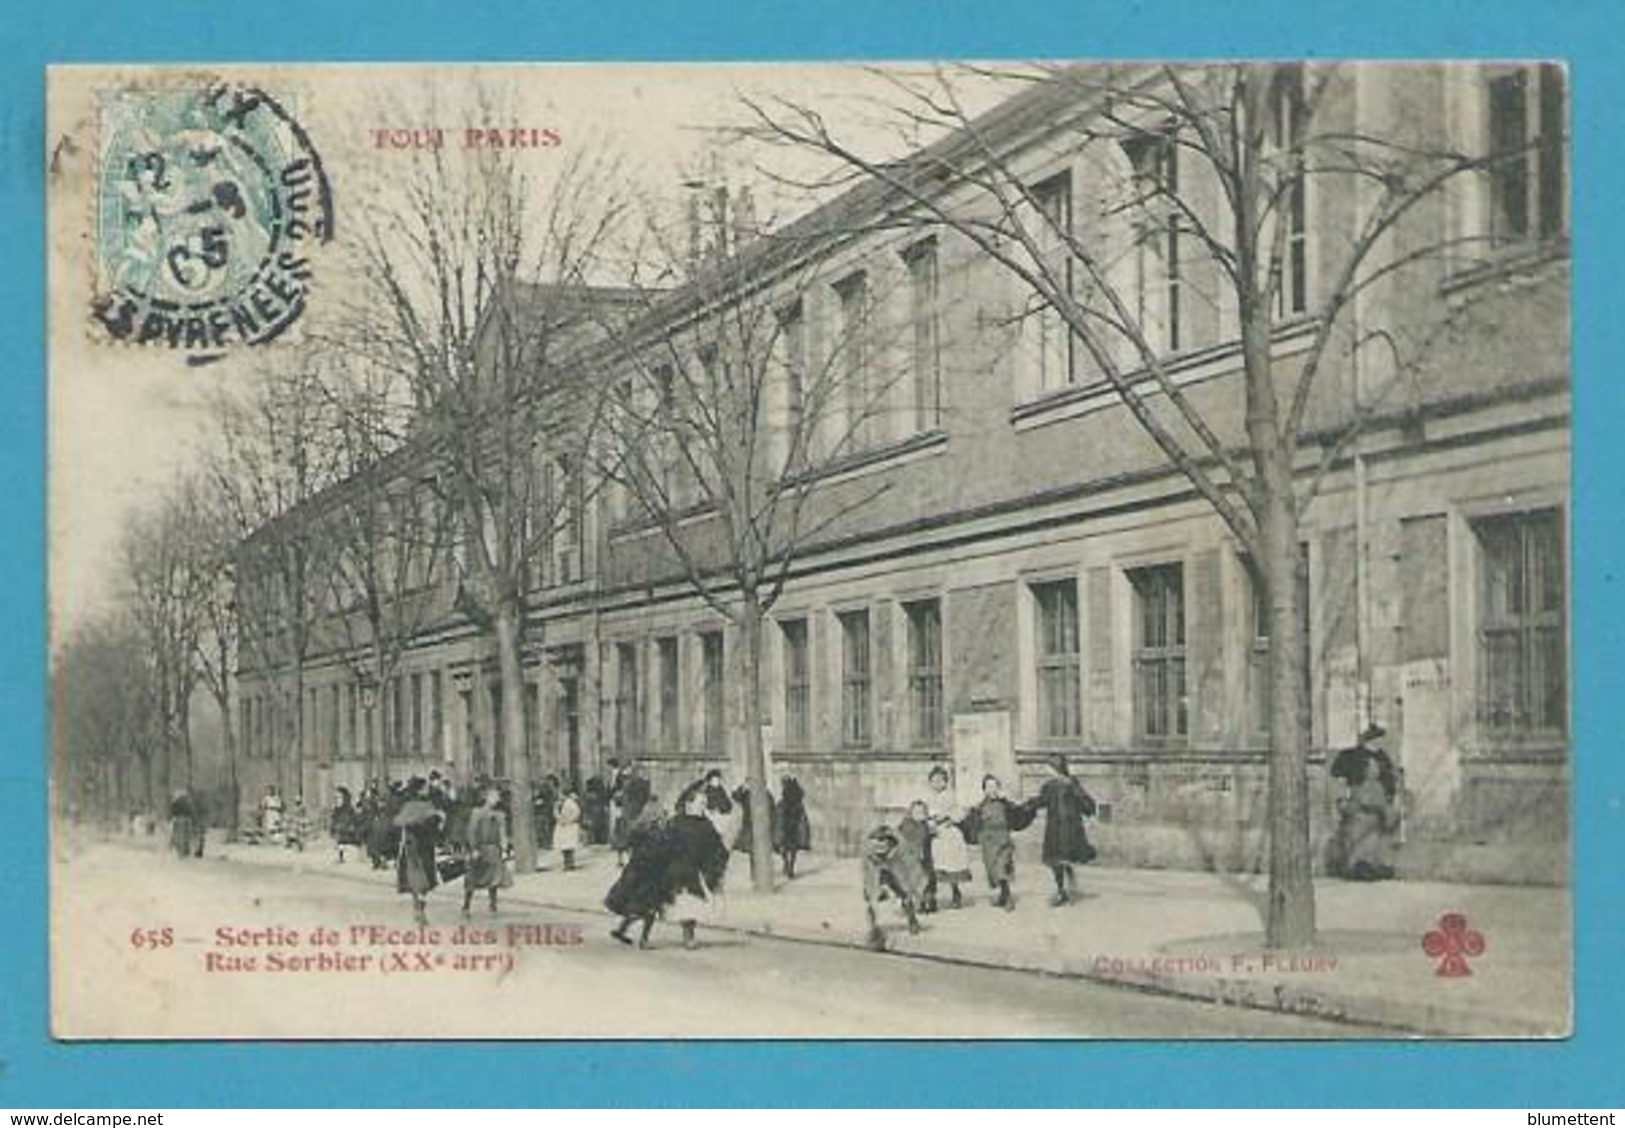 CPA 658 TOUT PARIS - Sortie De L'Ecole Des Filles Rue Sorbier (XXème) - Editeur FLEURY - Distretto: 20